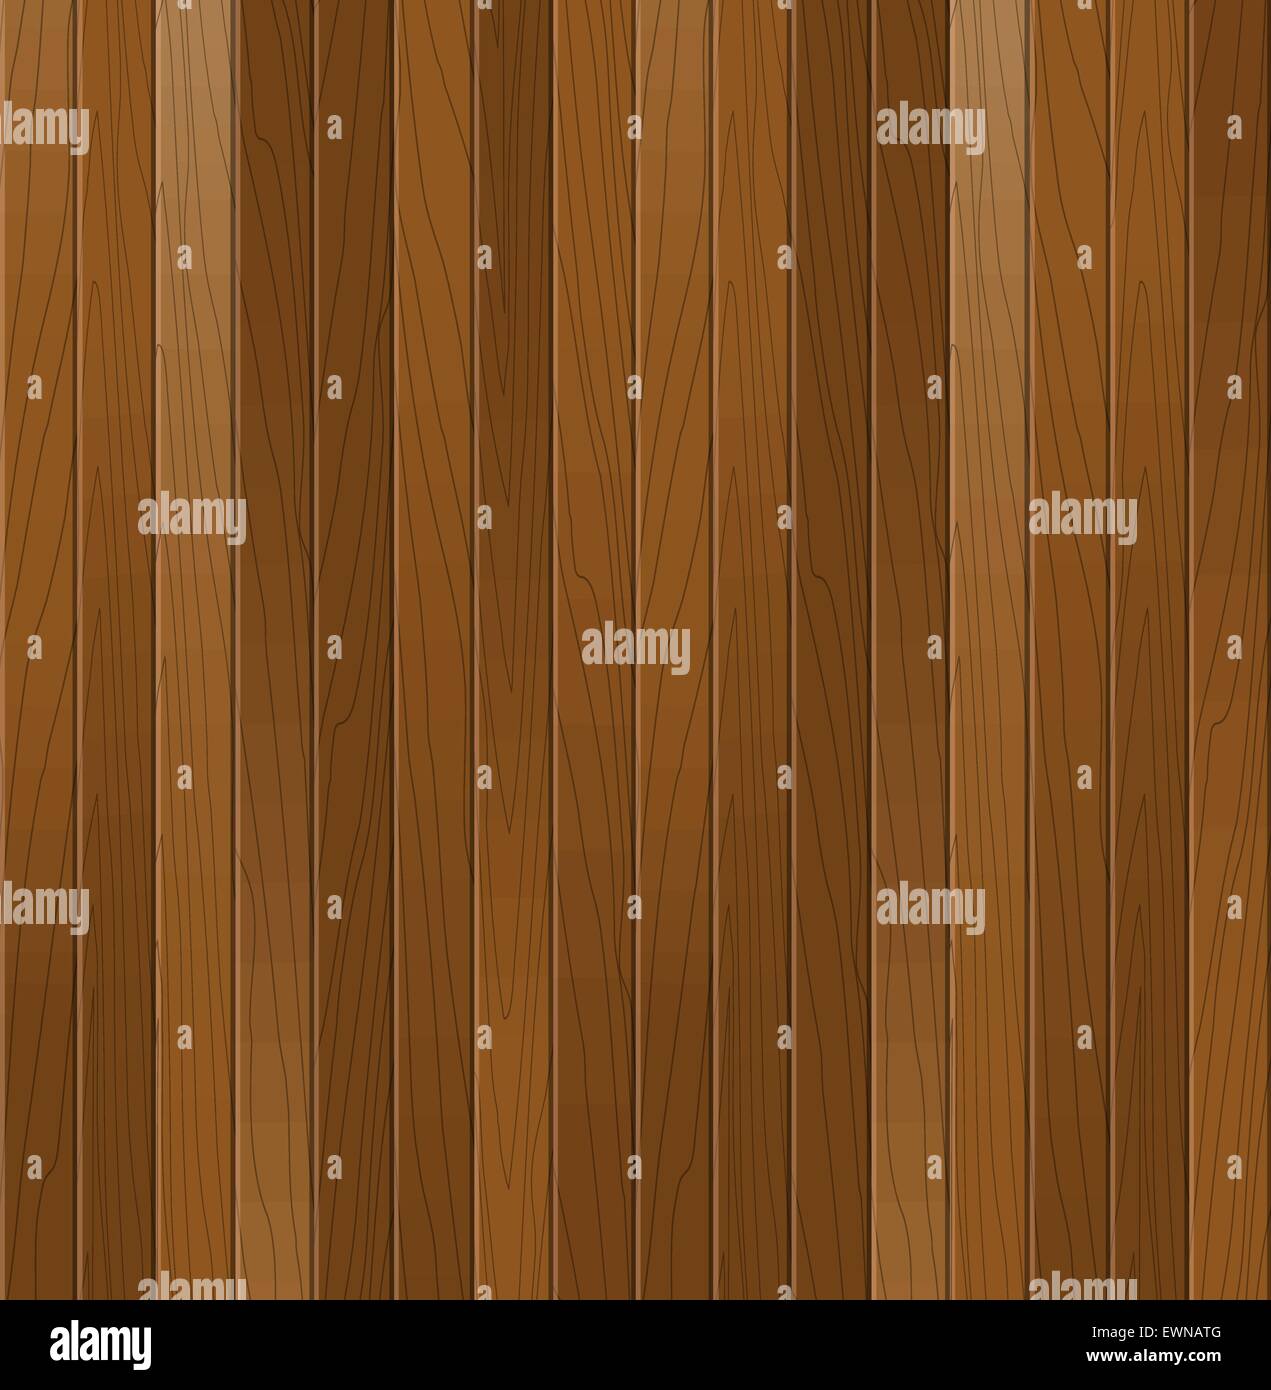 La texture en bois. Vector background. Illustration de Vecteur